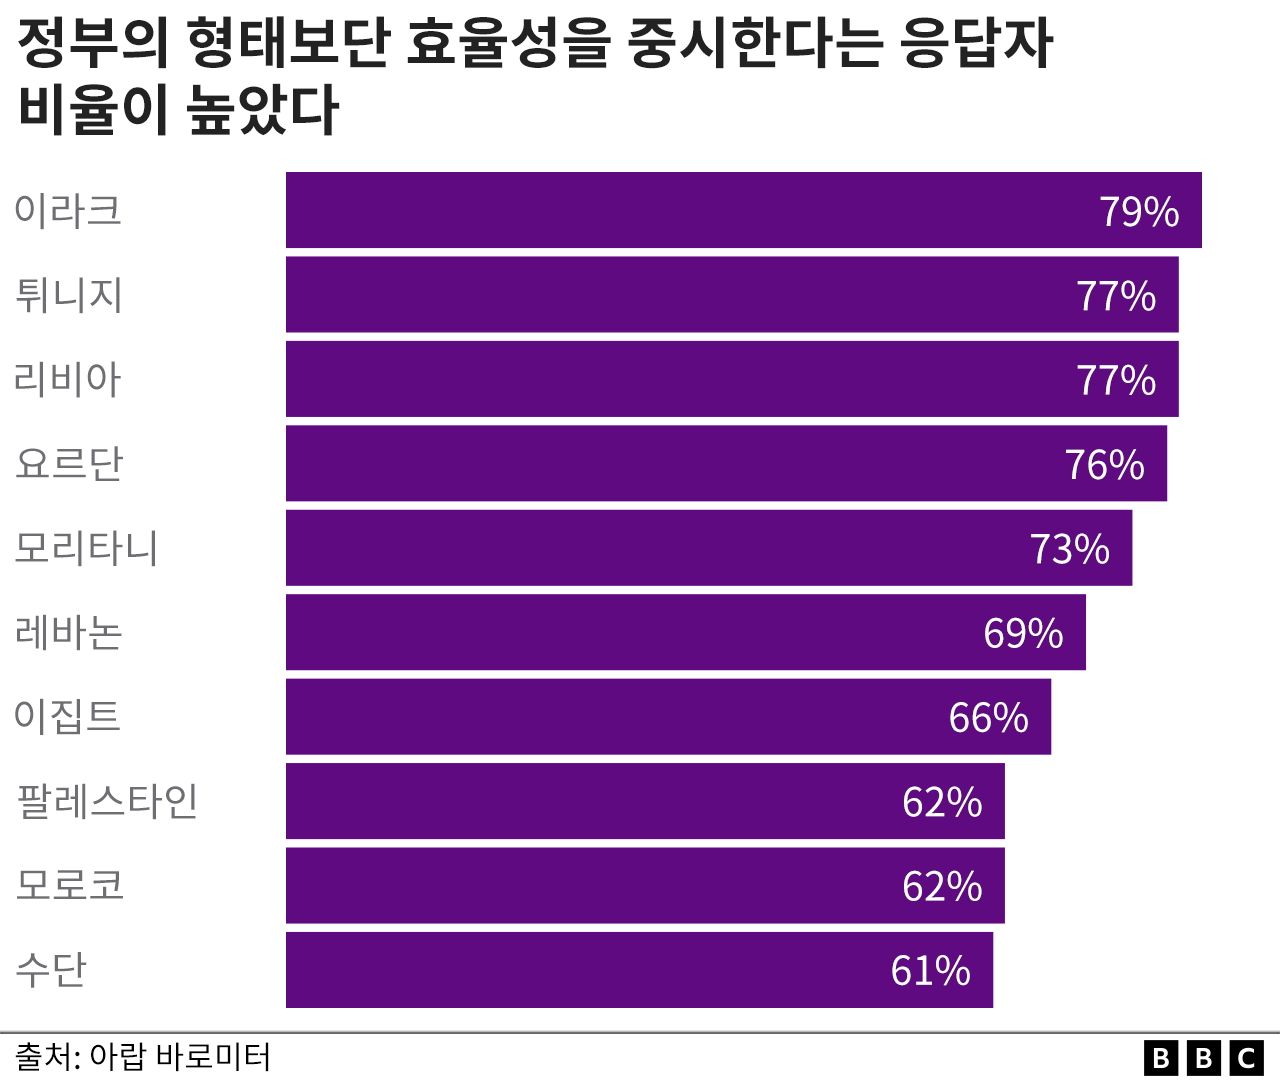 Porcentagem de entrevistados que estão mais interessados ​​em eficiência e desempenho do que no governo